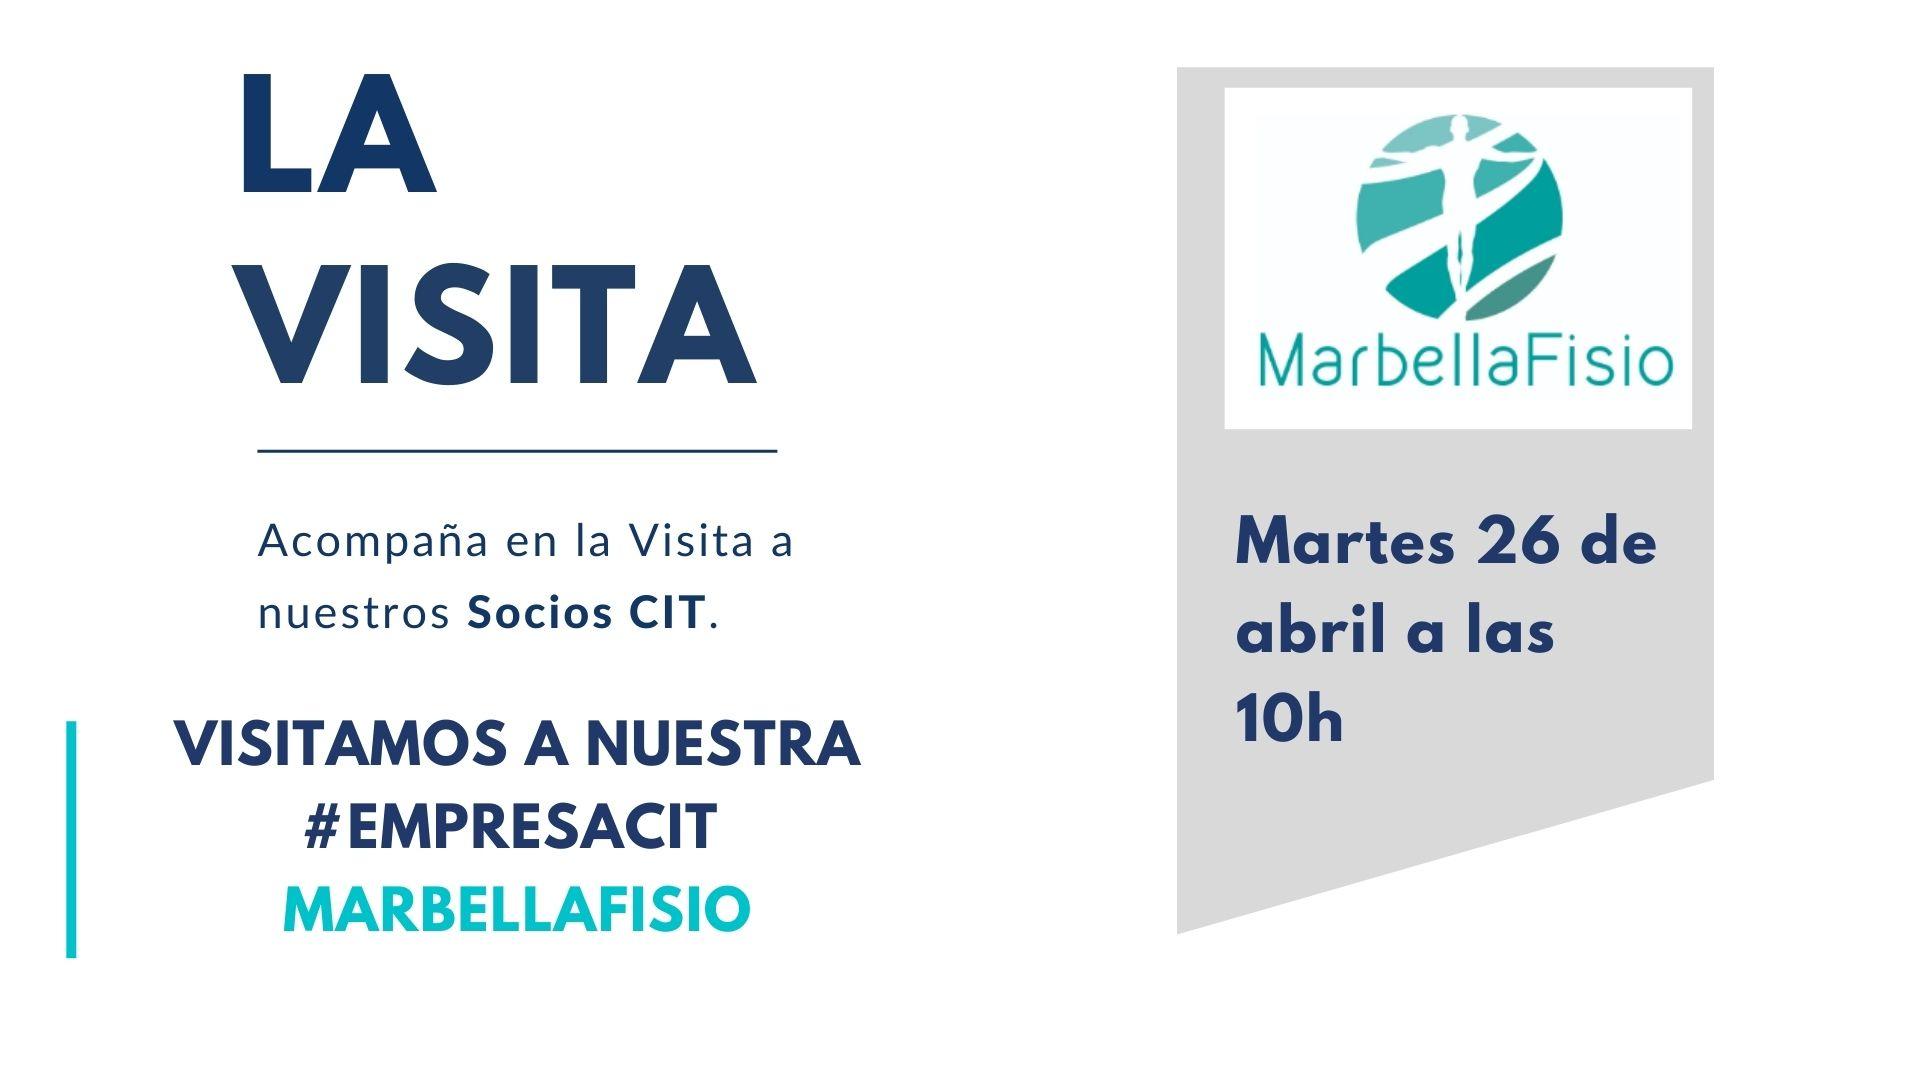 Hoy en » La Visita» conocemos a MarbellaFisio